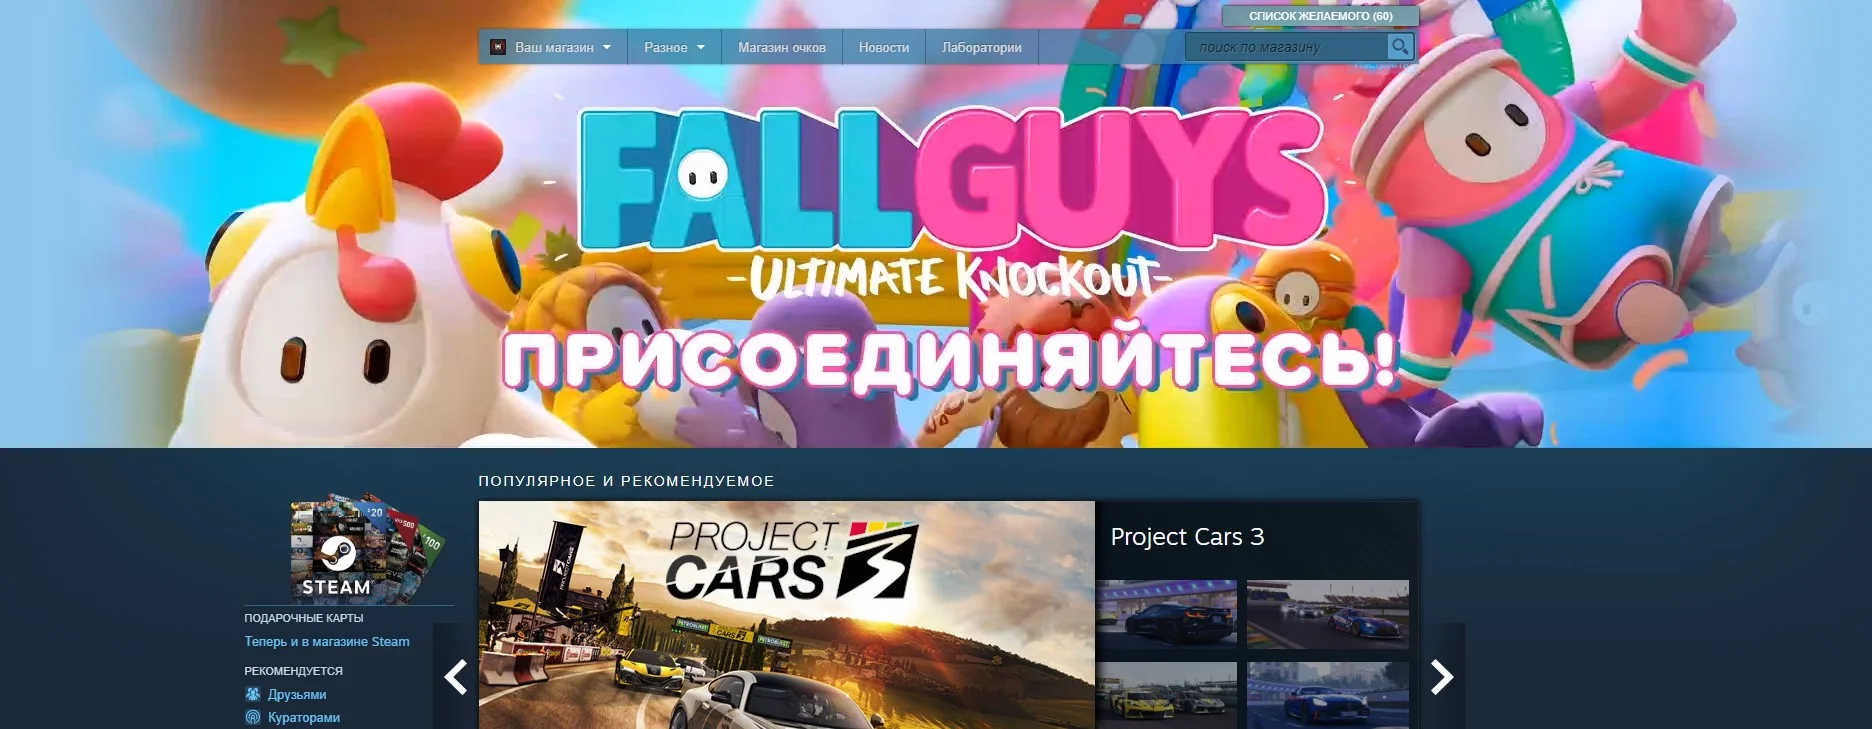 Пиковый онлайн Fall Guys в Steam уже превысил 55 тысяч человек - фото 2